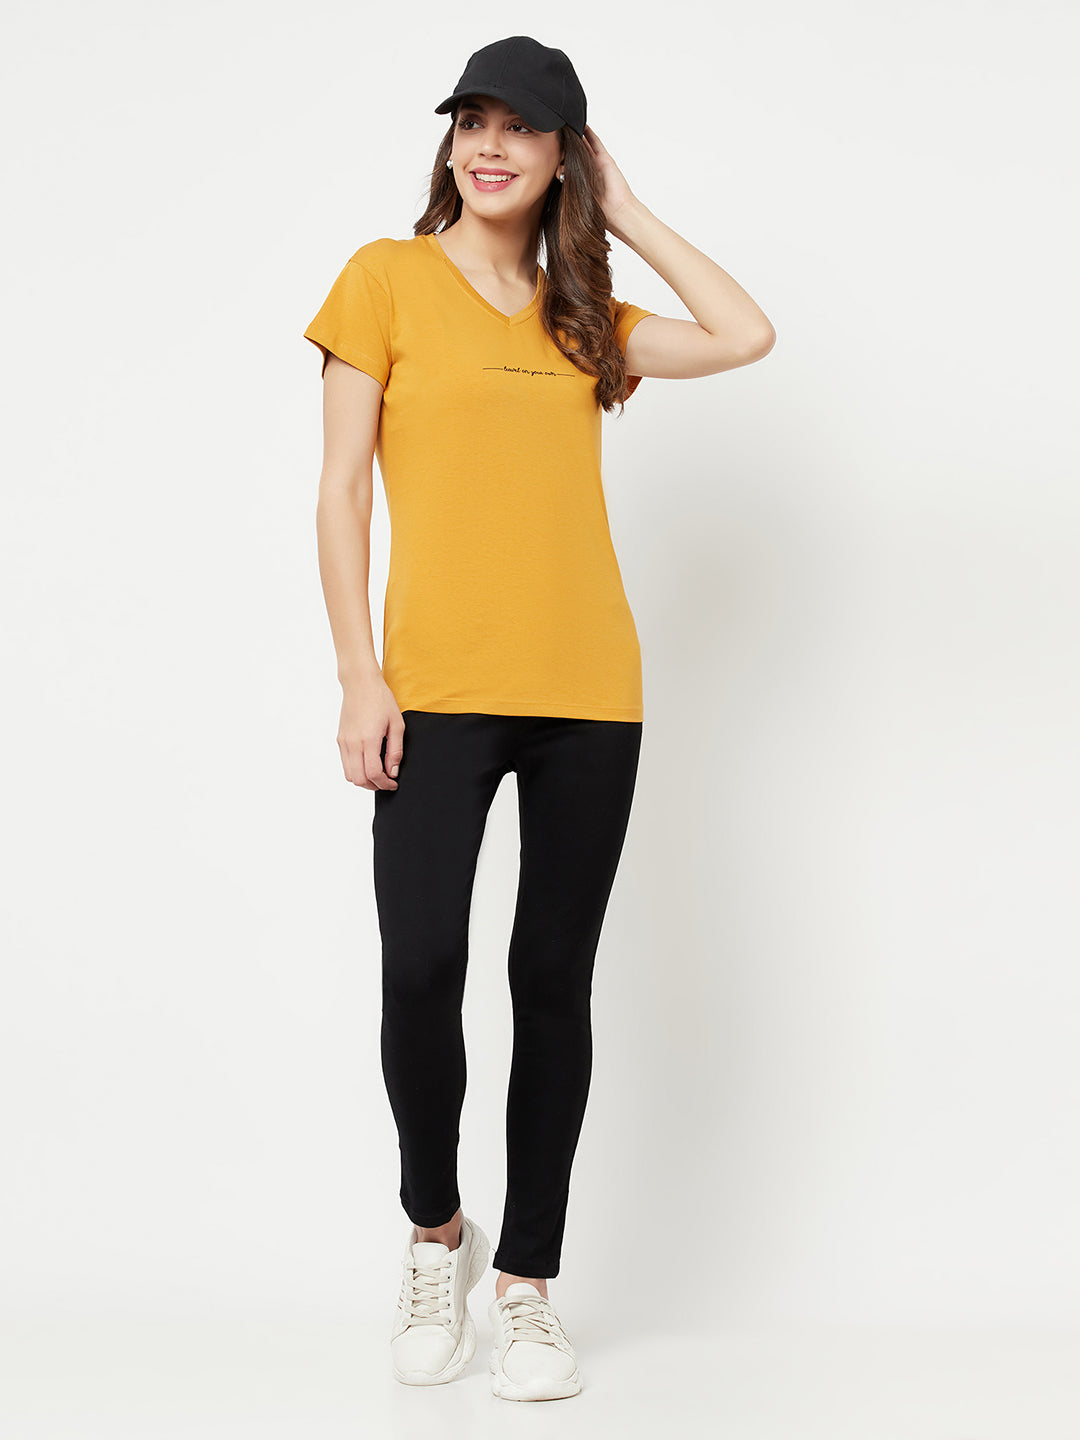 Mustard Printed V-Neck T-Shirt - Women T-Shirts